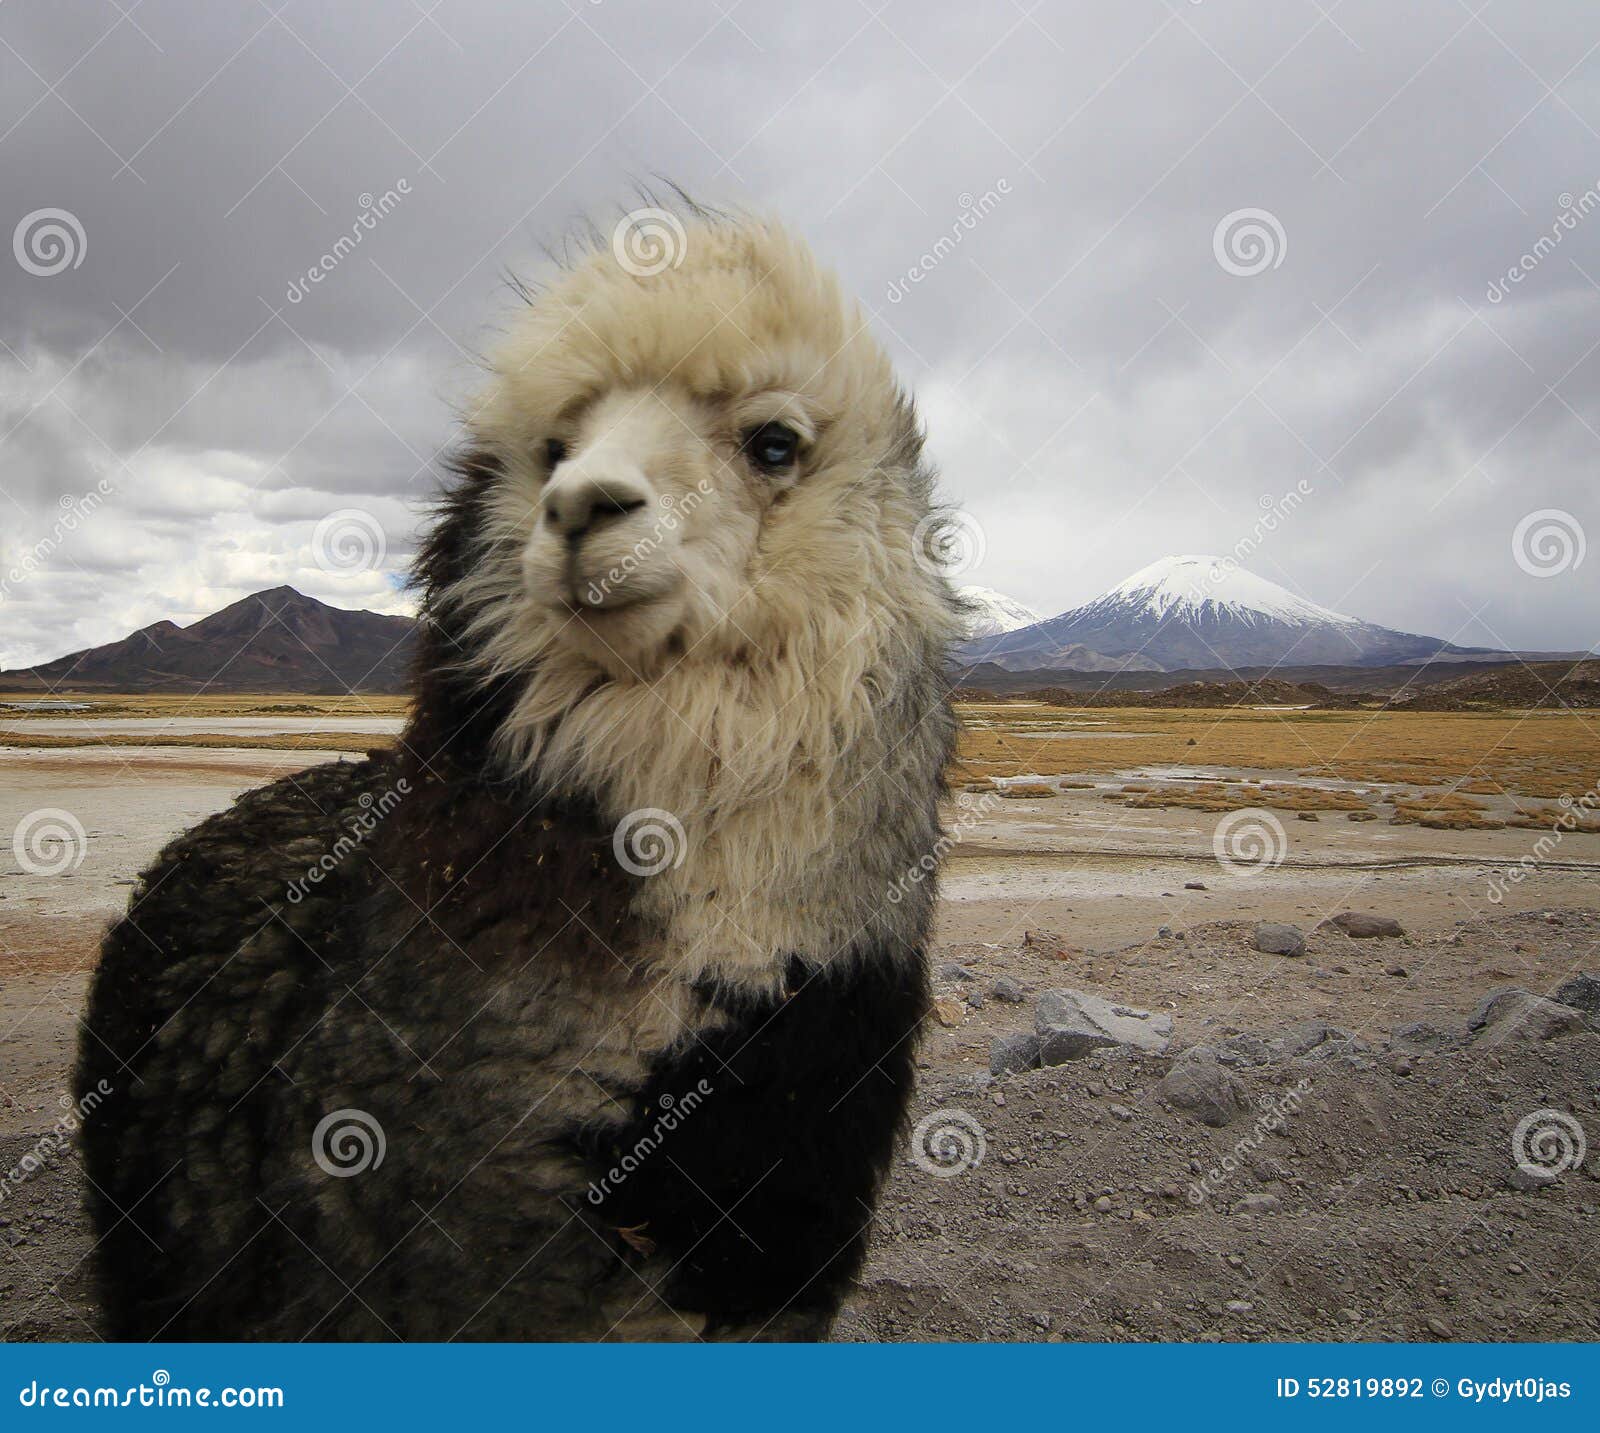 alpaca at the chile altiplano